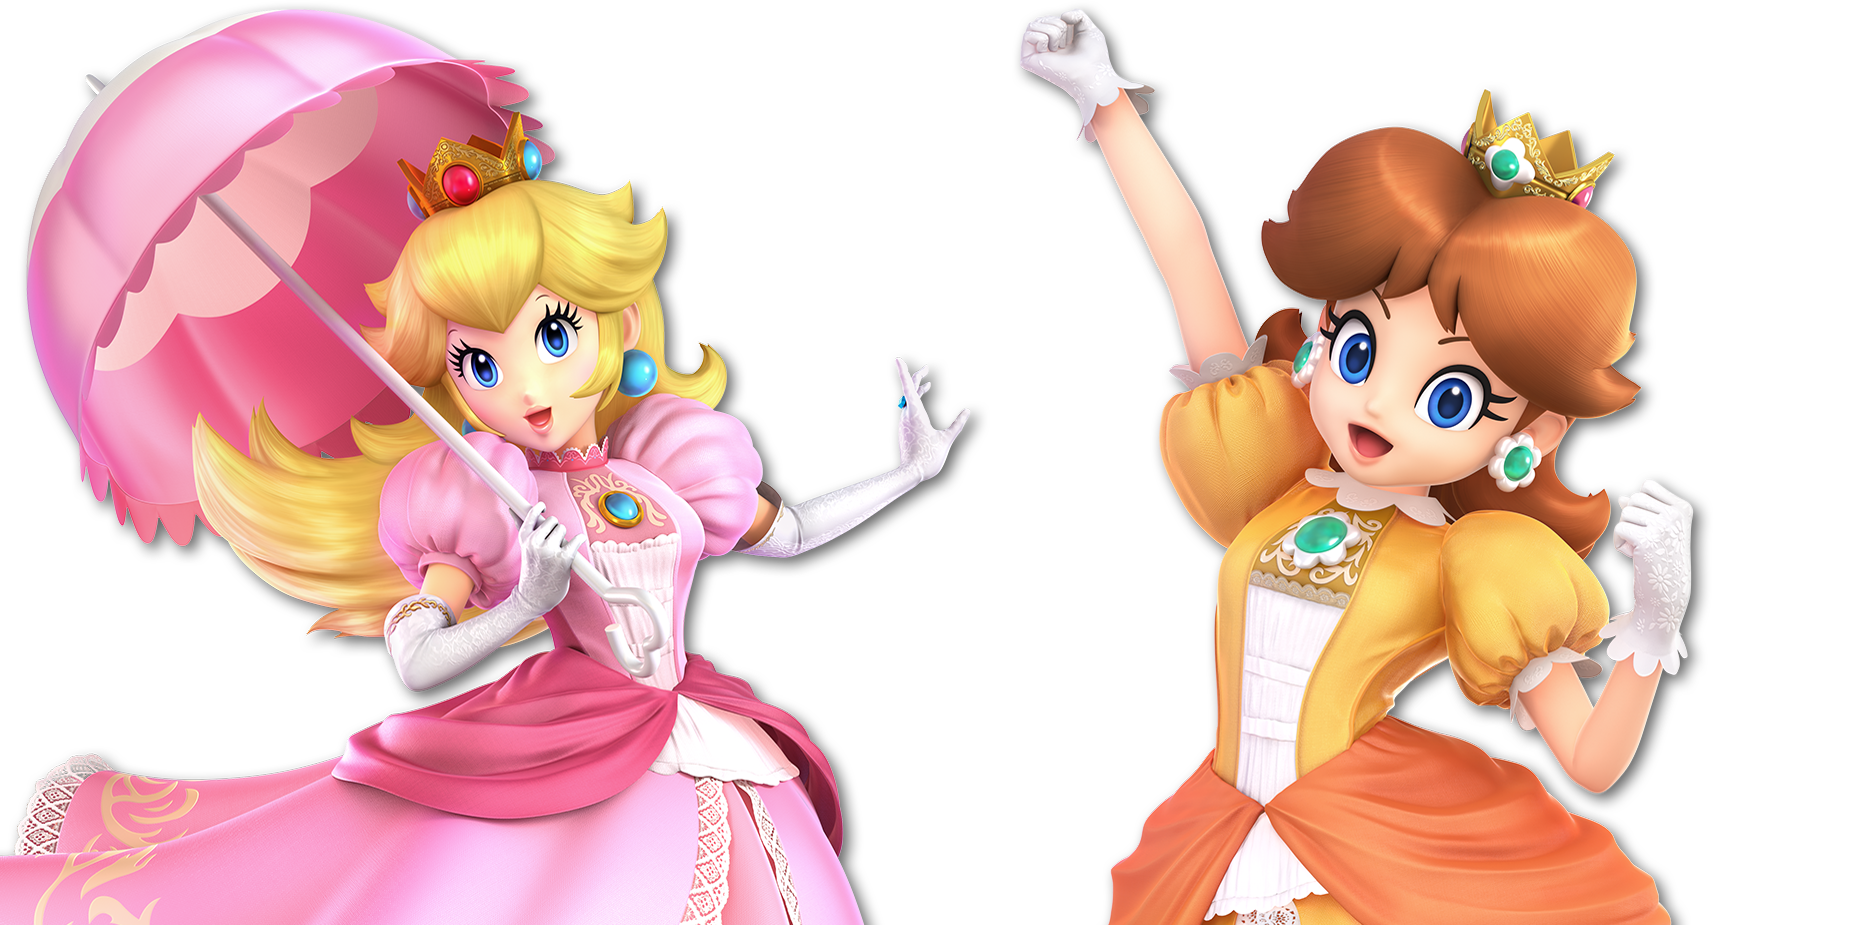 Princess Peach and Princess Daisy.